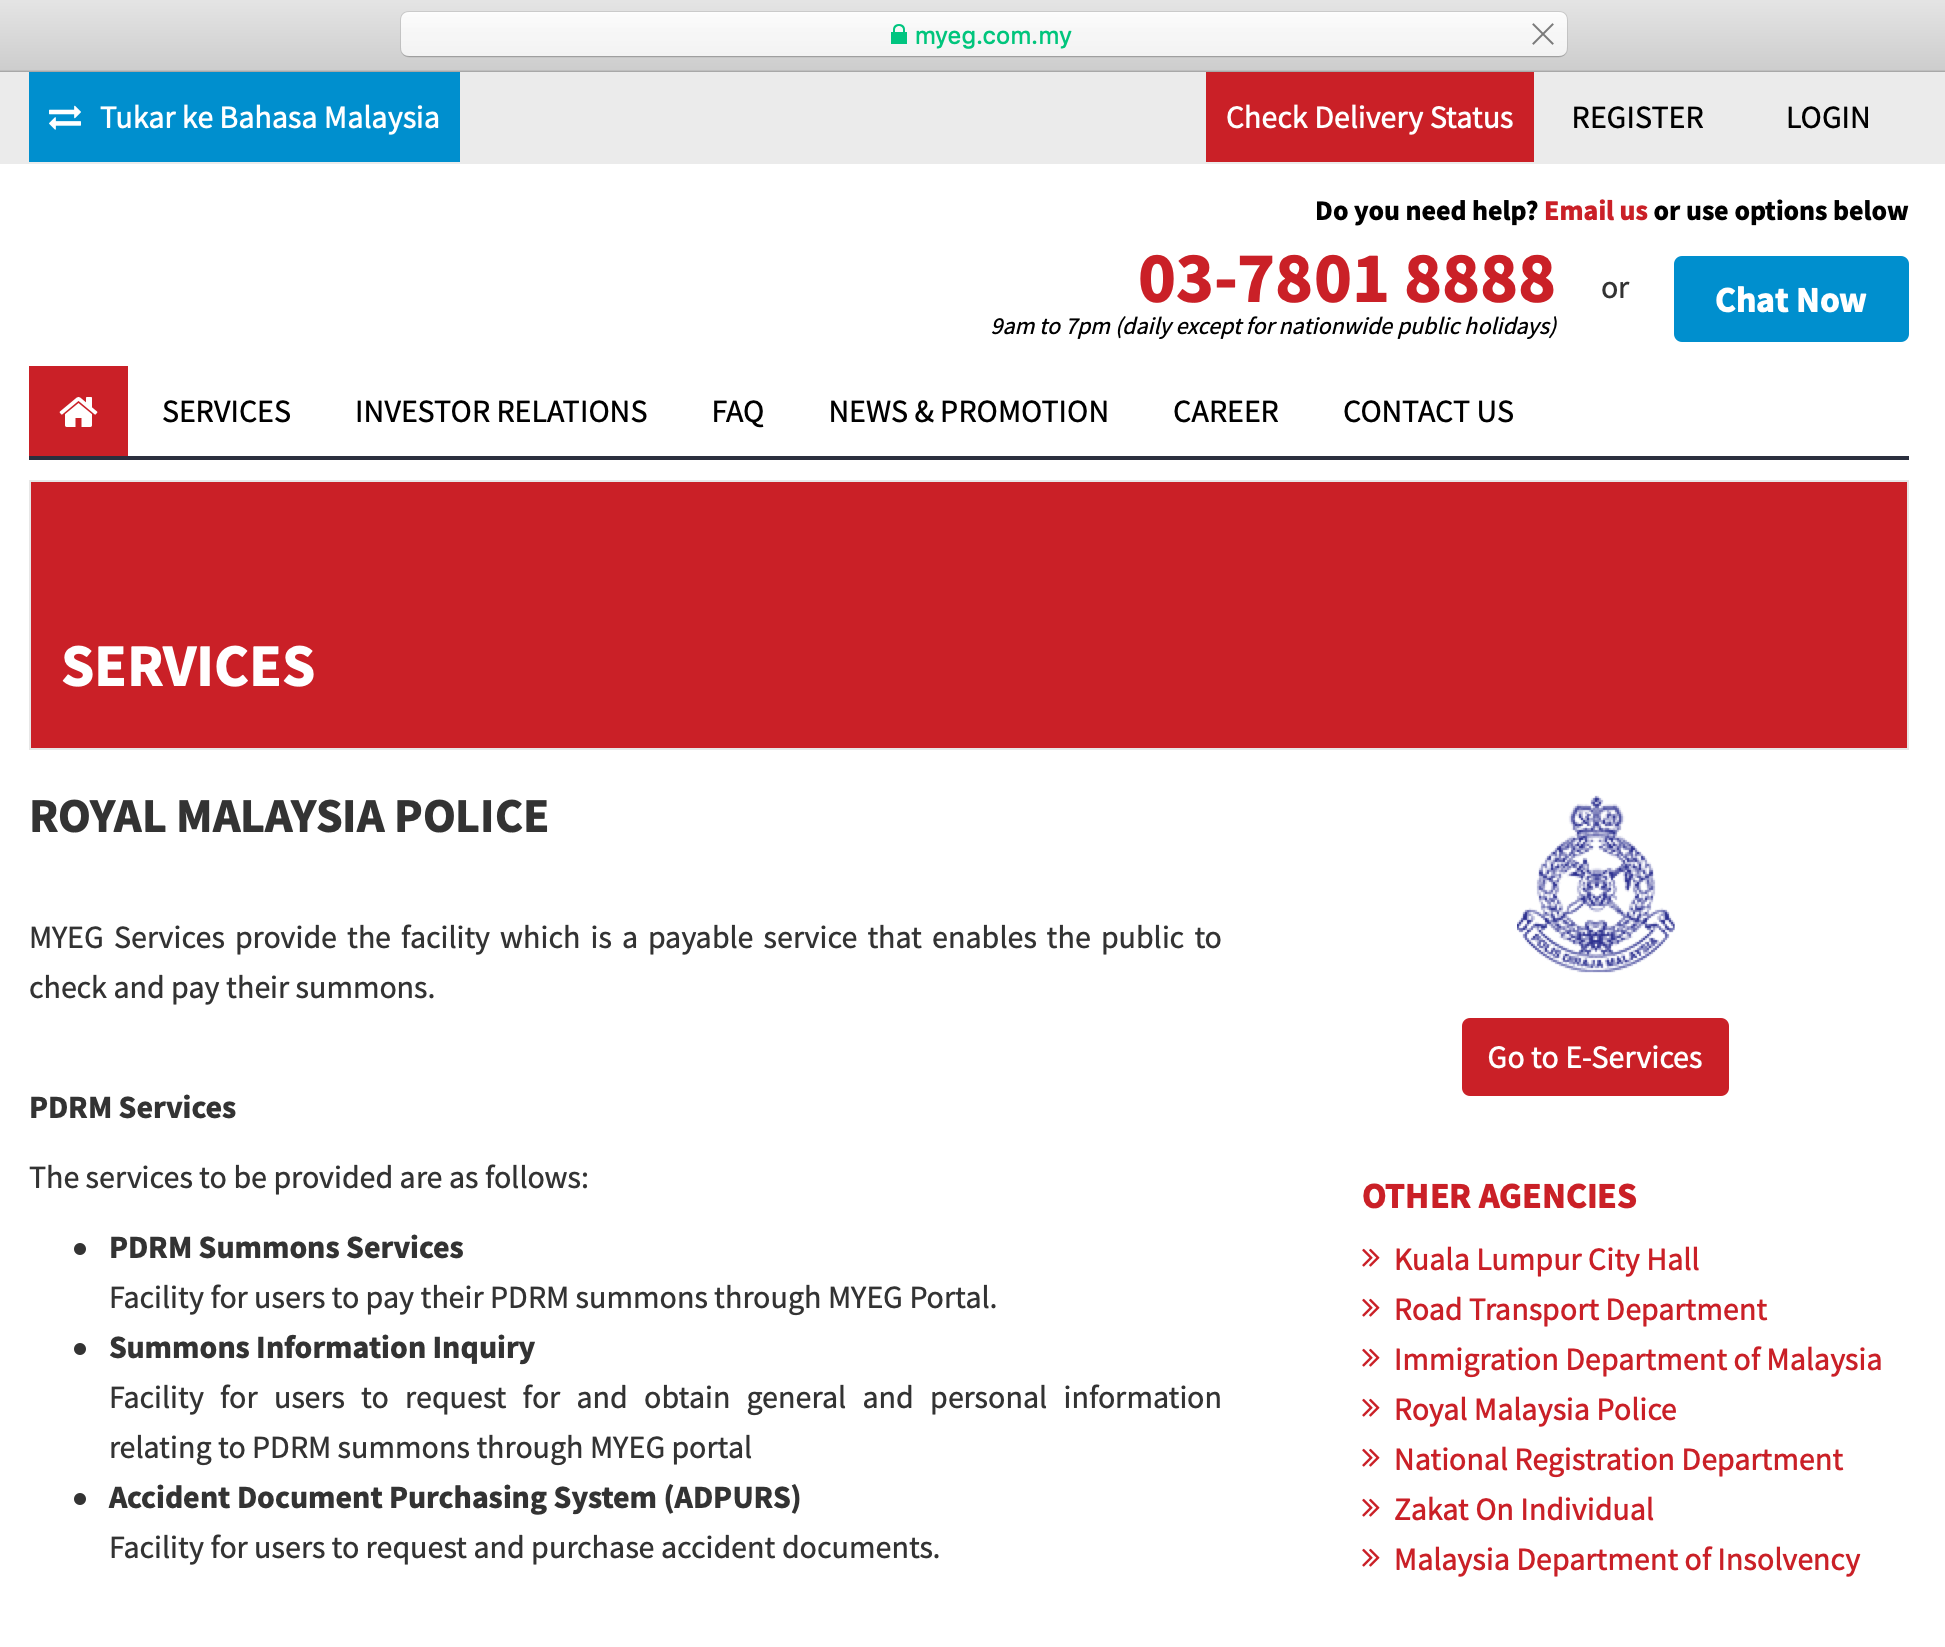 民众可以浏览马来西亚的电子政务提供商MyEg官网了解更多。-图摘自MyEg-